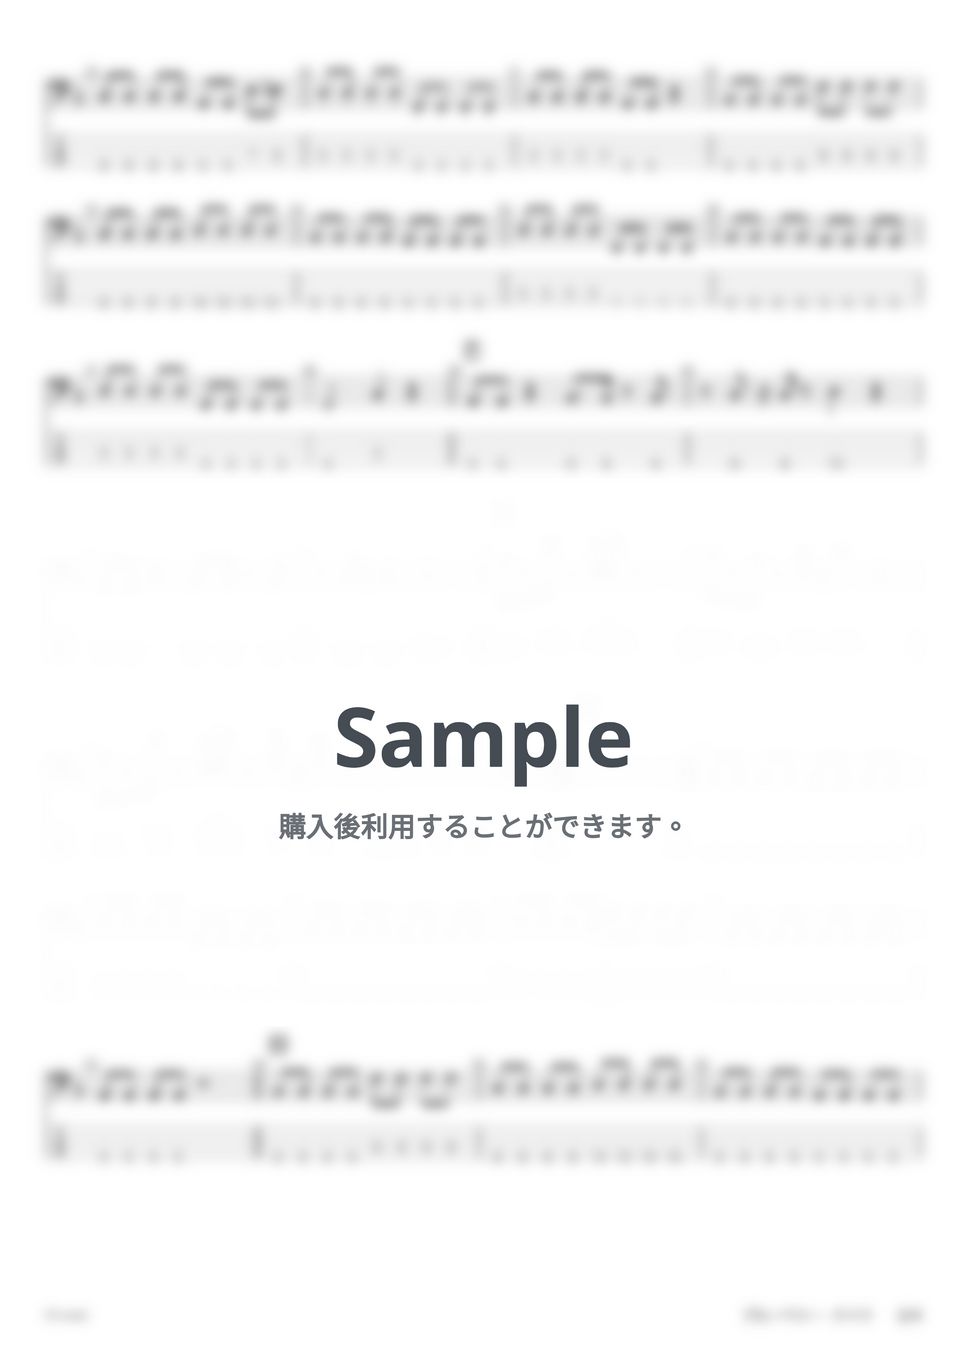 マカロニえんぴつ - ブルーベリー・ナイツ (ベースタブ譜) by G's score